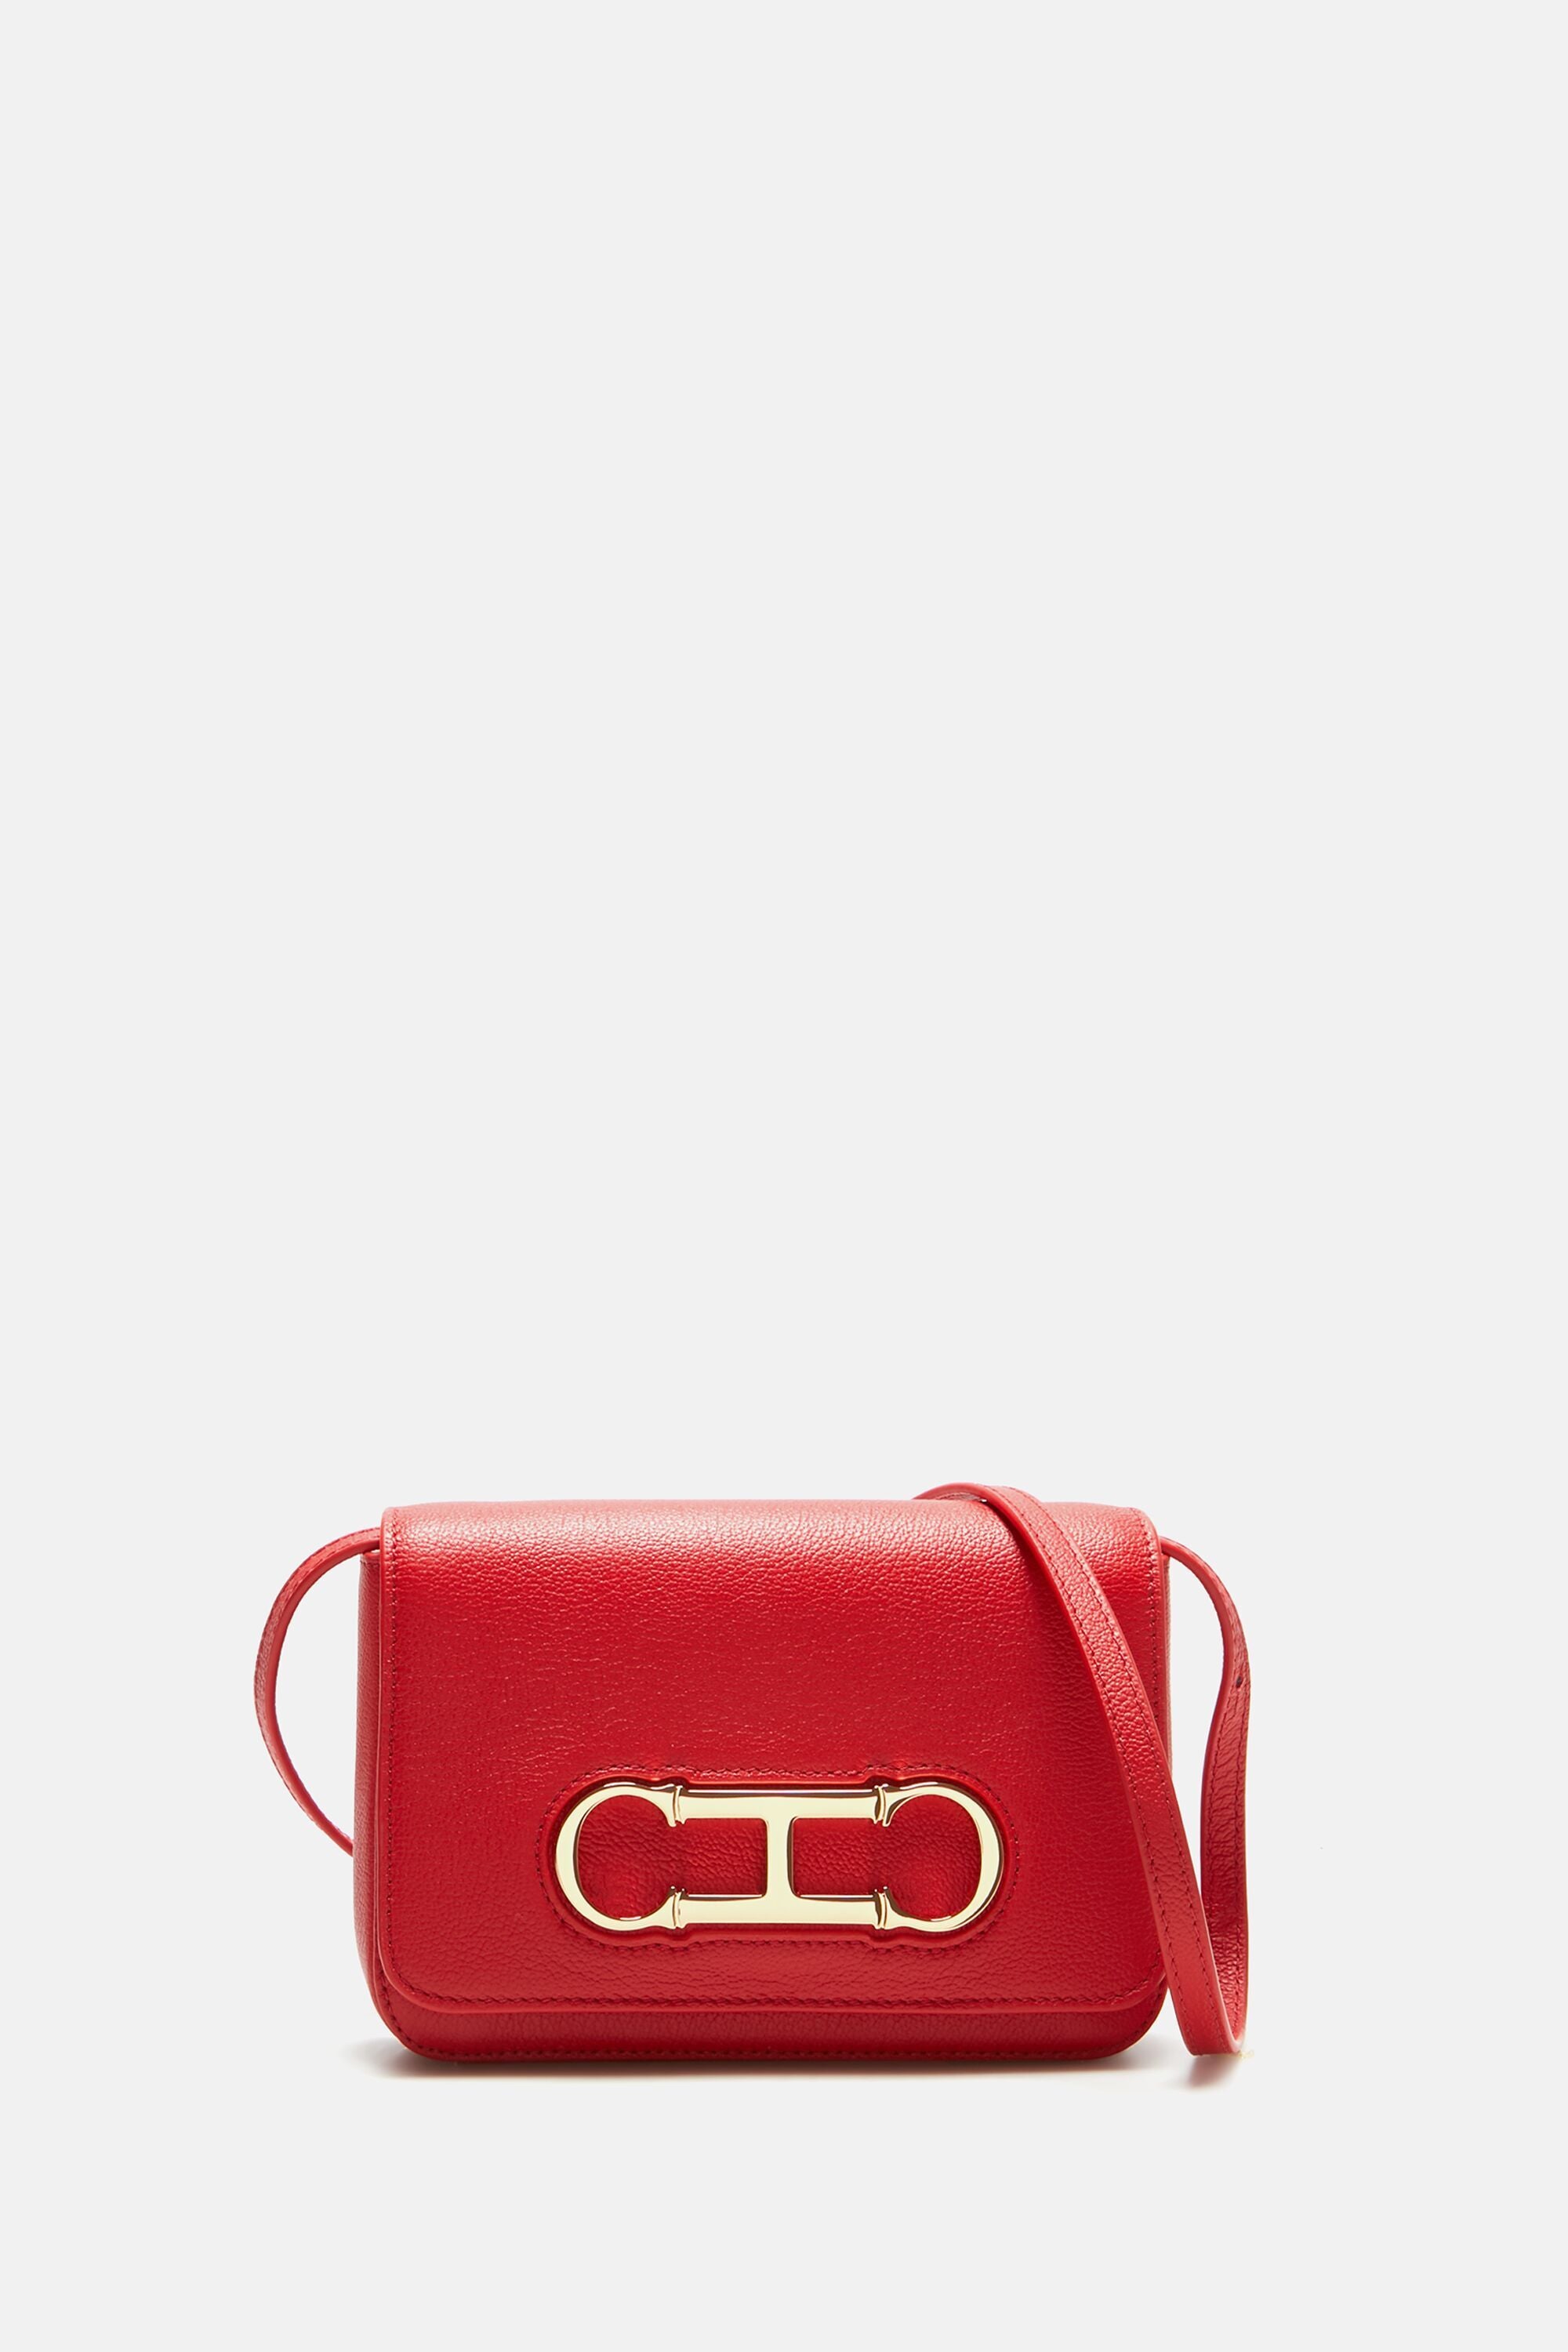 EVELYN Bag Red | Women's Top Handle Crossbody Bag – Steve Madden